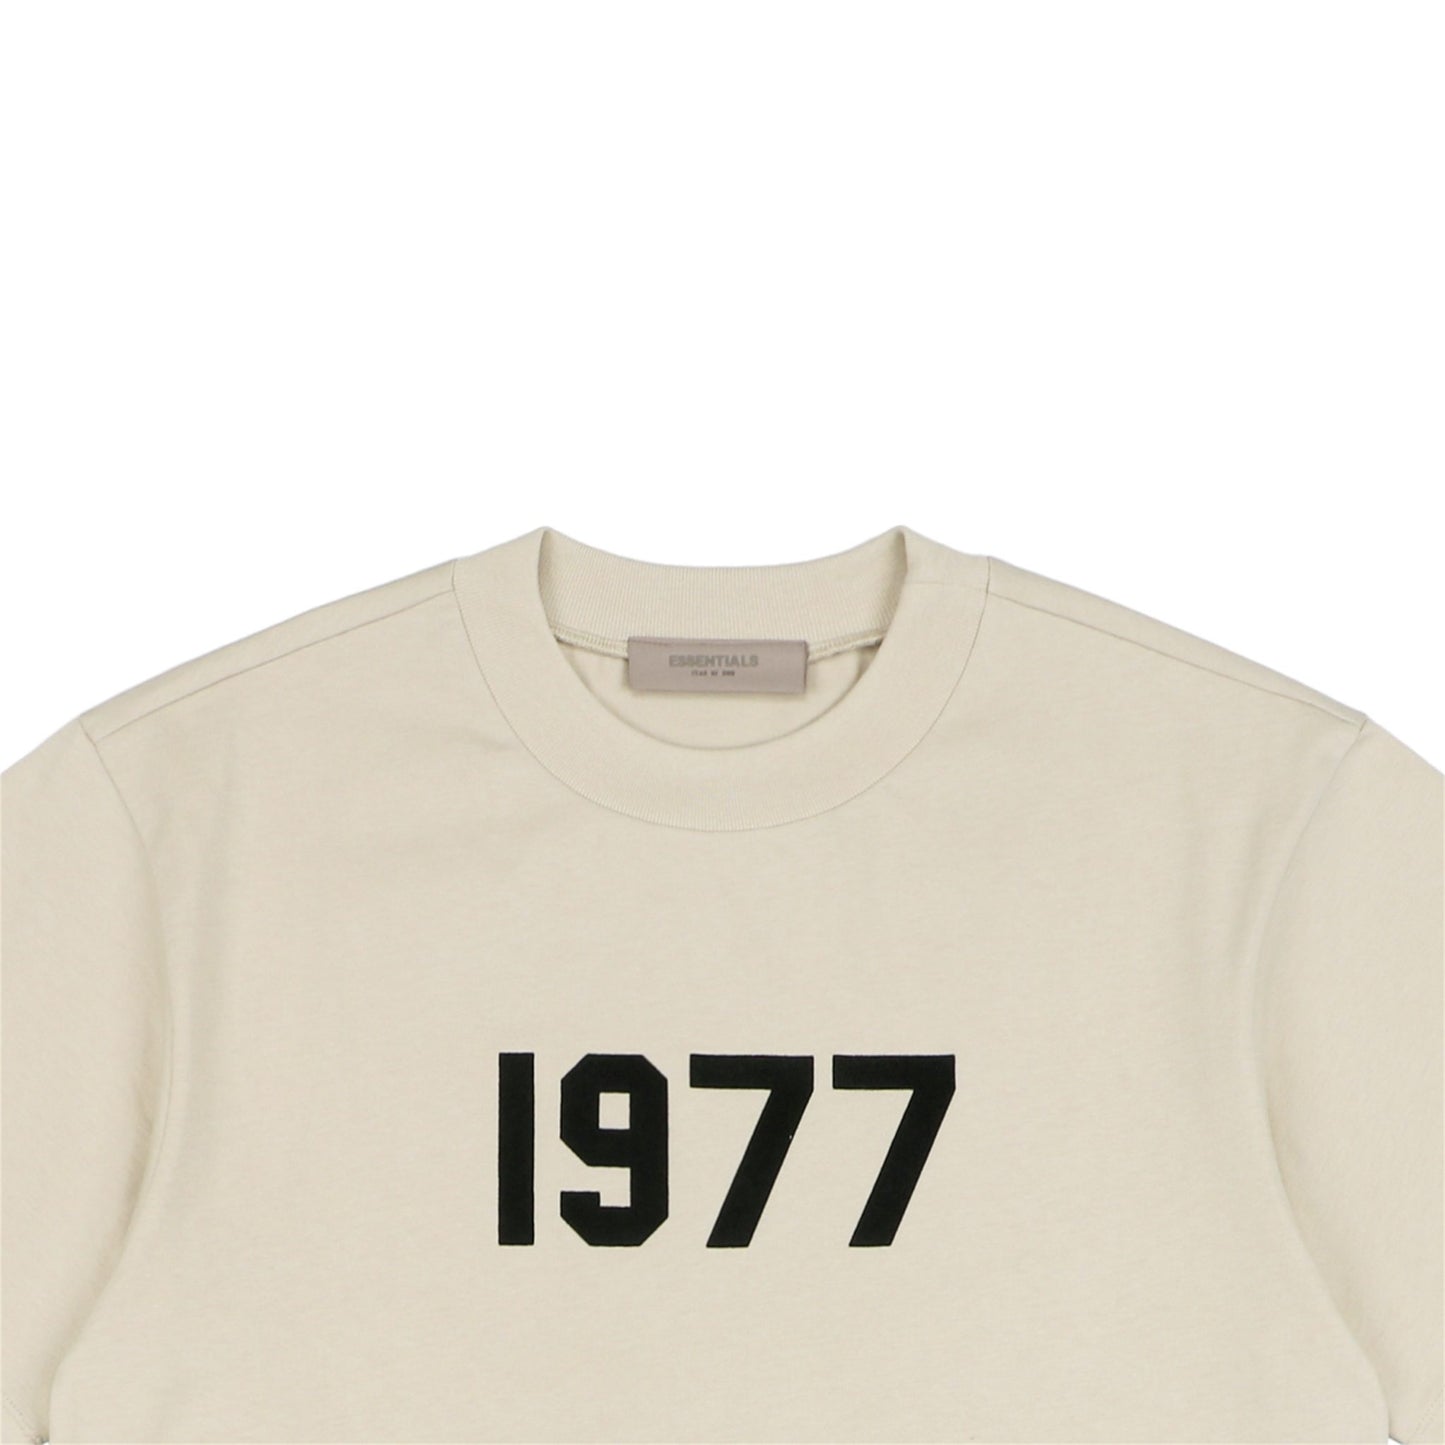 FOG Beige 1977 E55ential5 T-Shirt